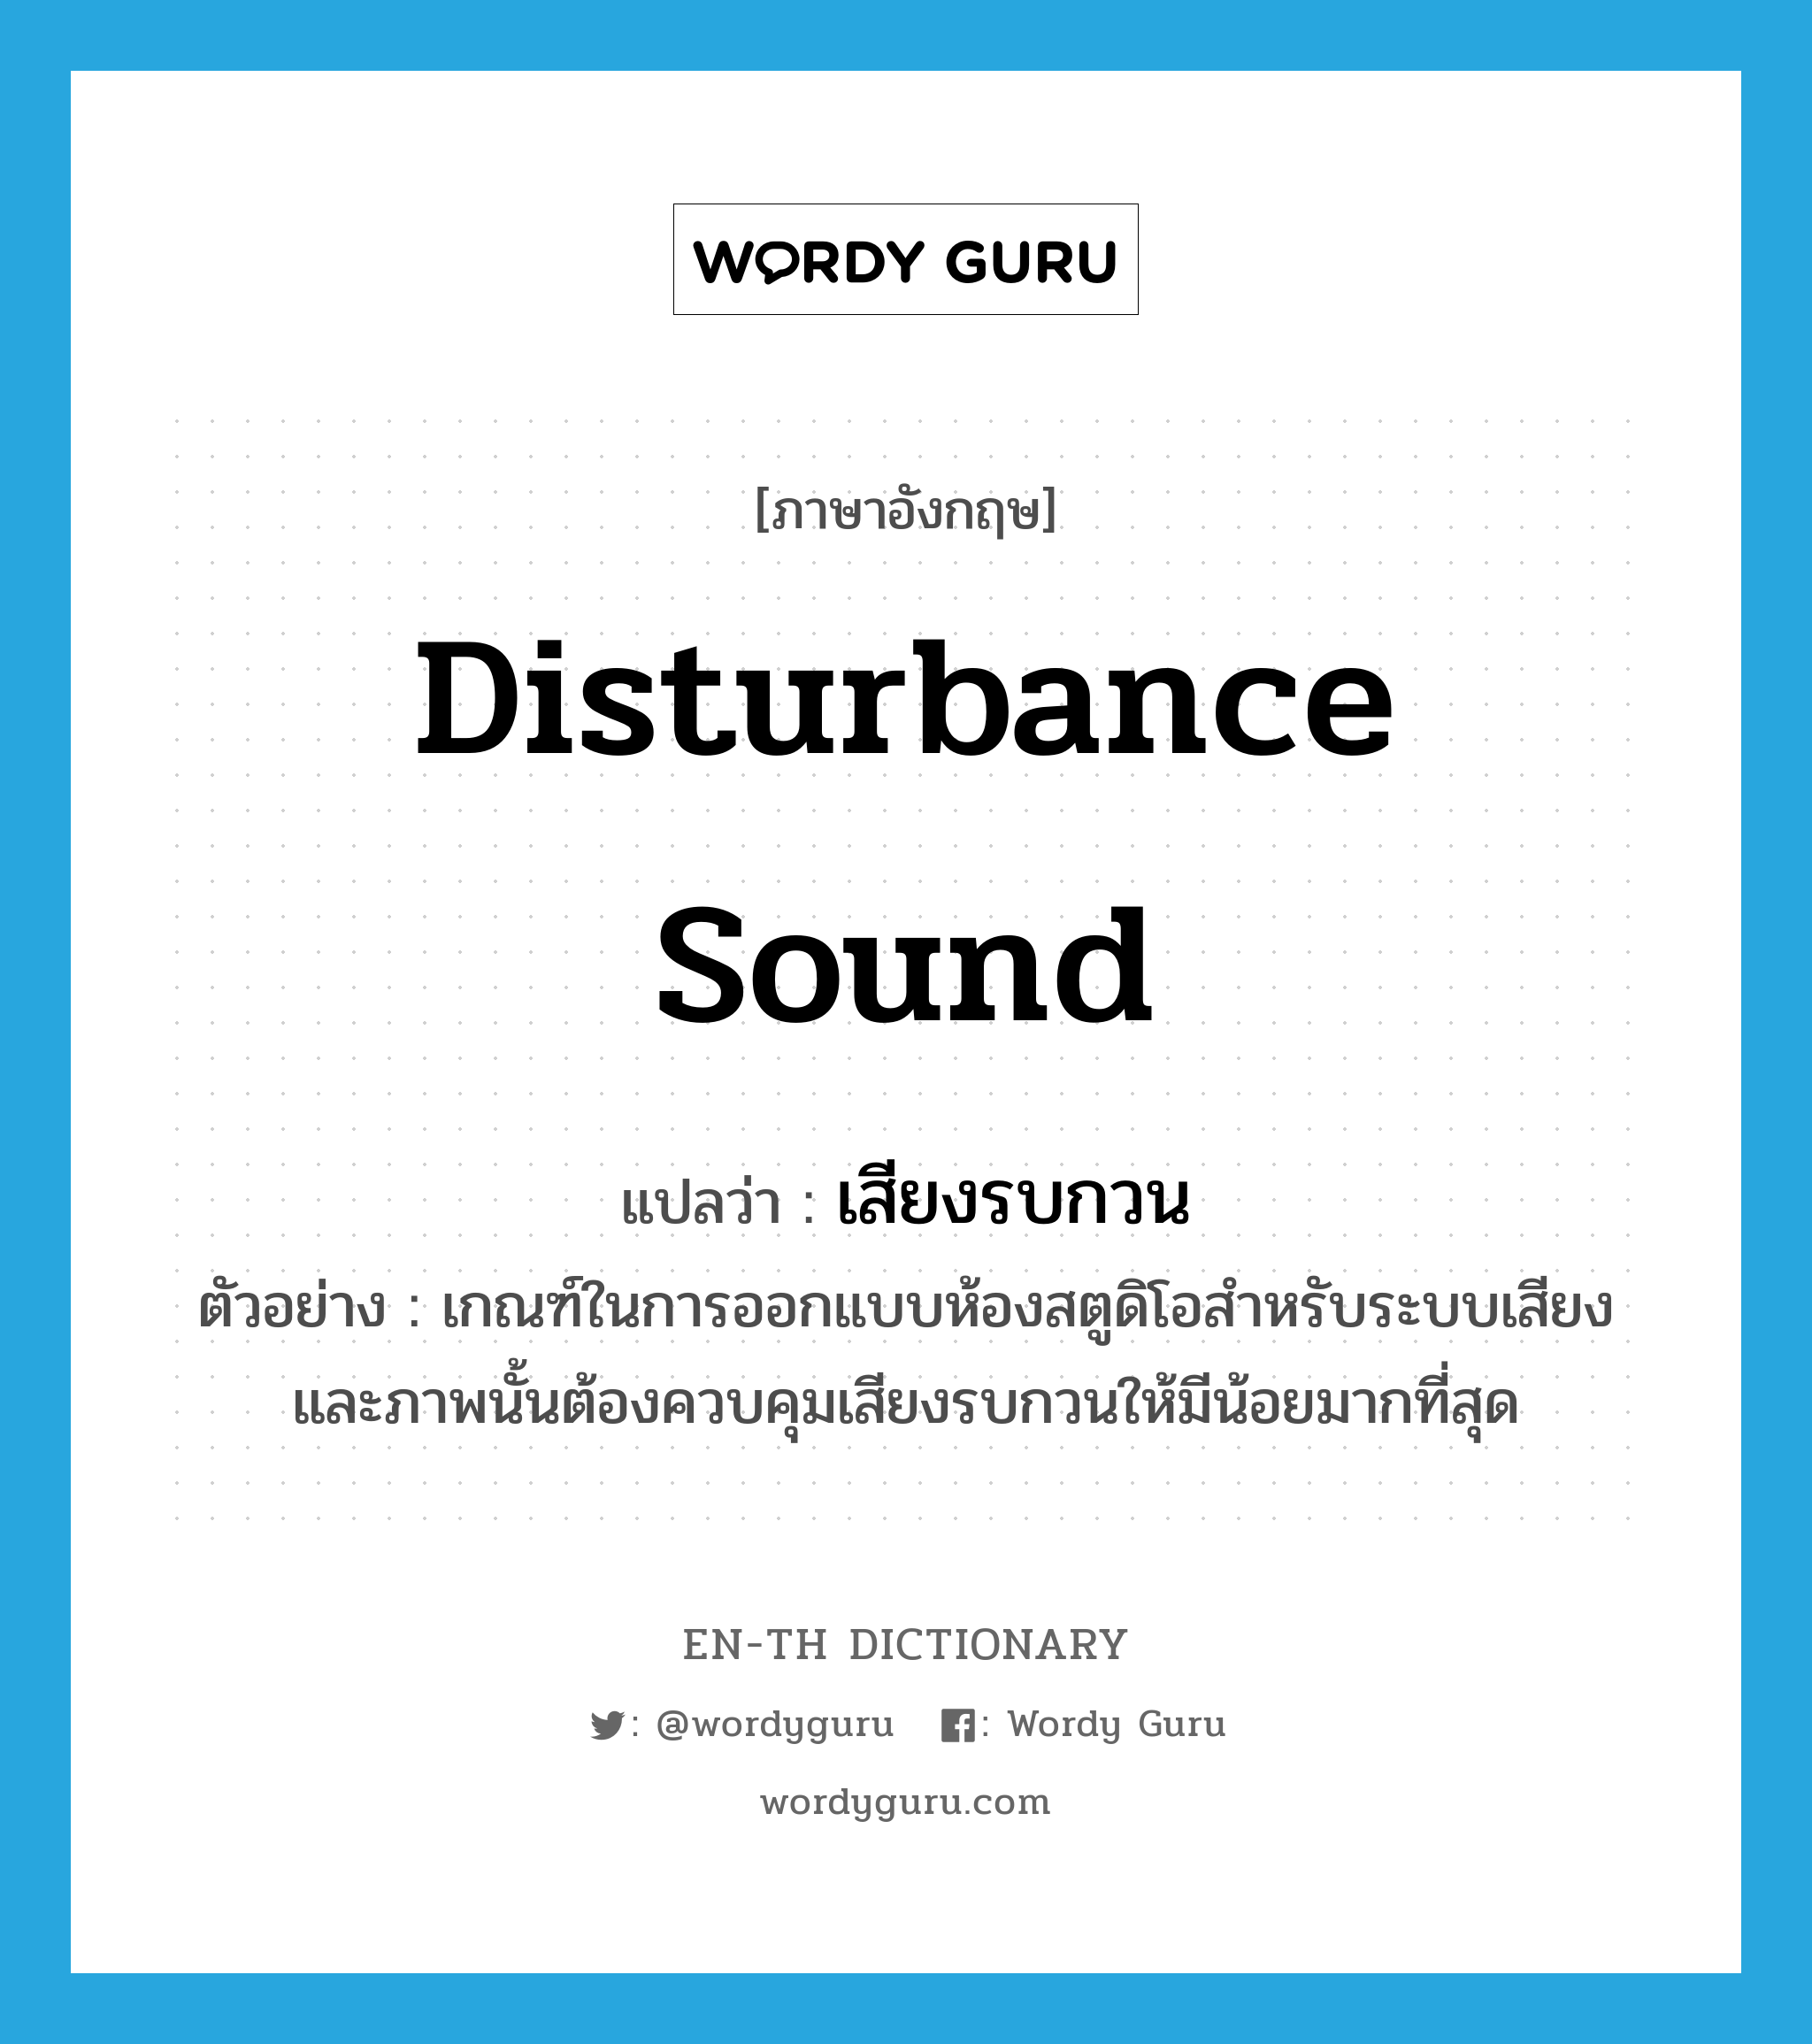 disturbance sound แปลว่า?, คำศัพท์ภาษาอังกฤษ disturbance sound แปลว่า เสียงรบกวน ประเภท N ตัวอย่าง เกณฑ์ในการออกแบบห้องสตูดิโอสำหรับระบบเสียงและภาพนั้นต้องควบคุมเสียงรบกวนให้มีน้อยมากที่สุด หมวด N